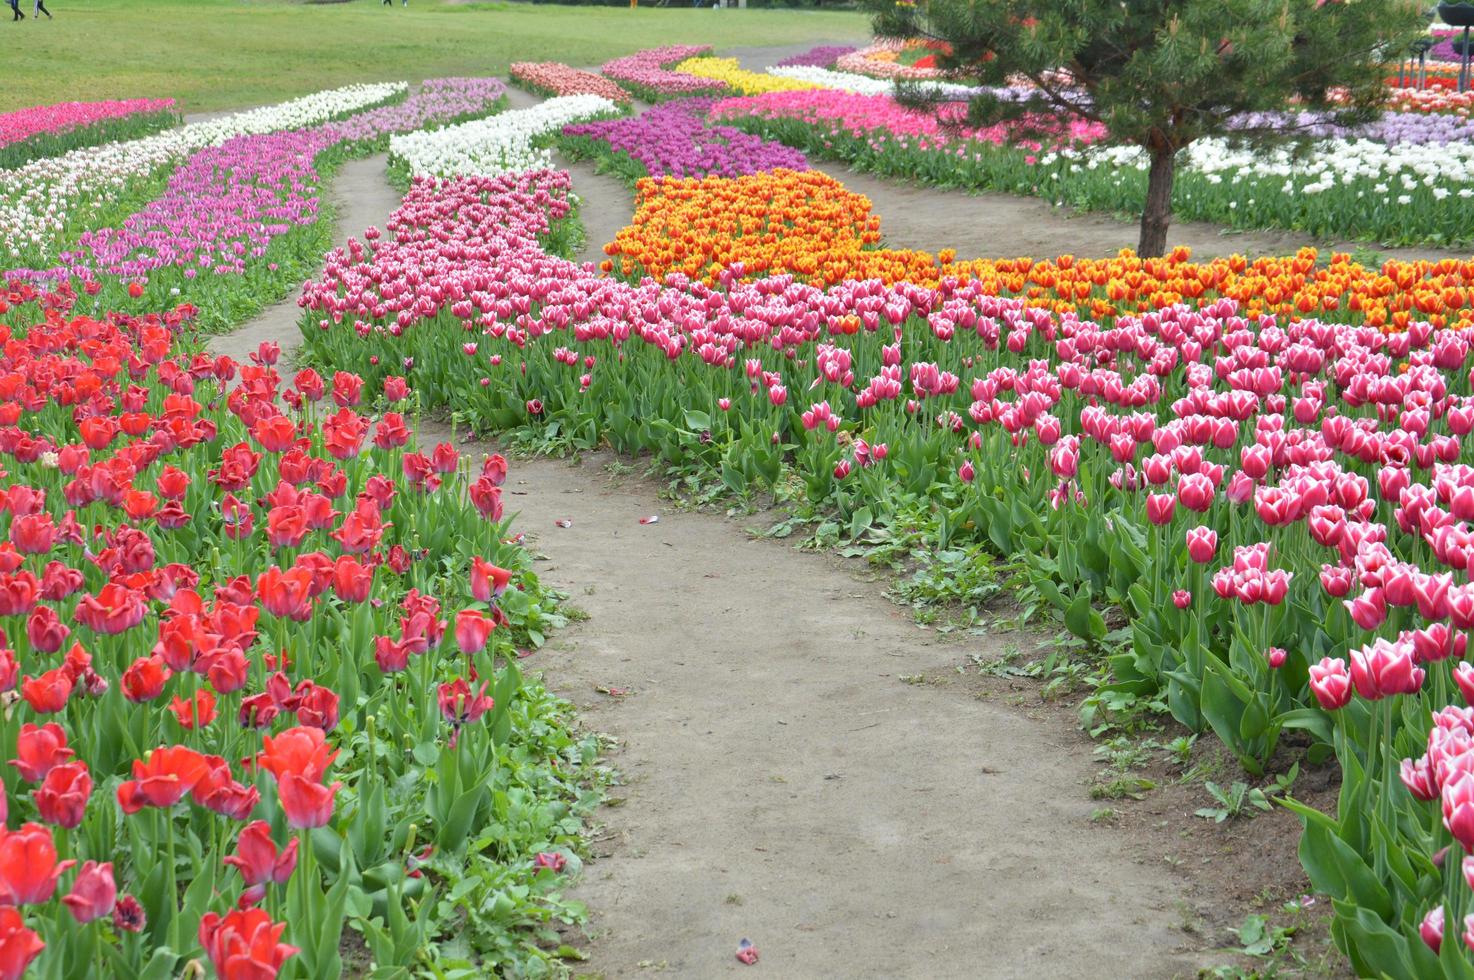 textur av ett fält med flerfärgade blommade tulpaner foto